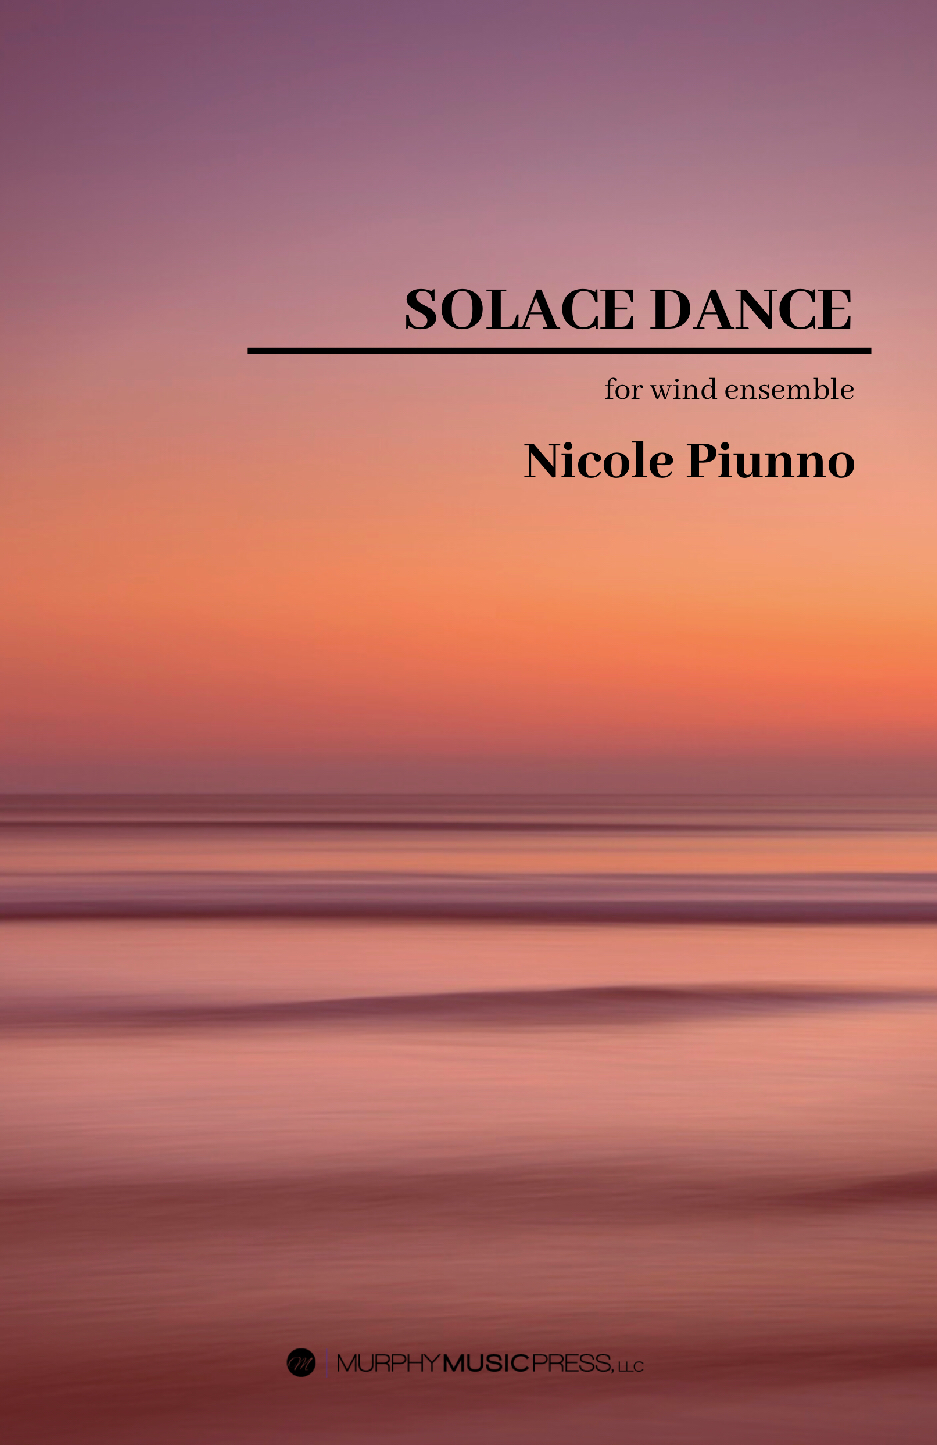 Solace Dance  by Nicole Piunno